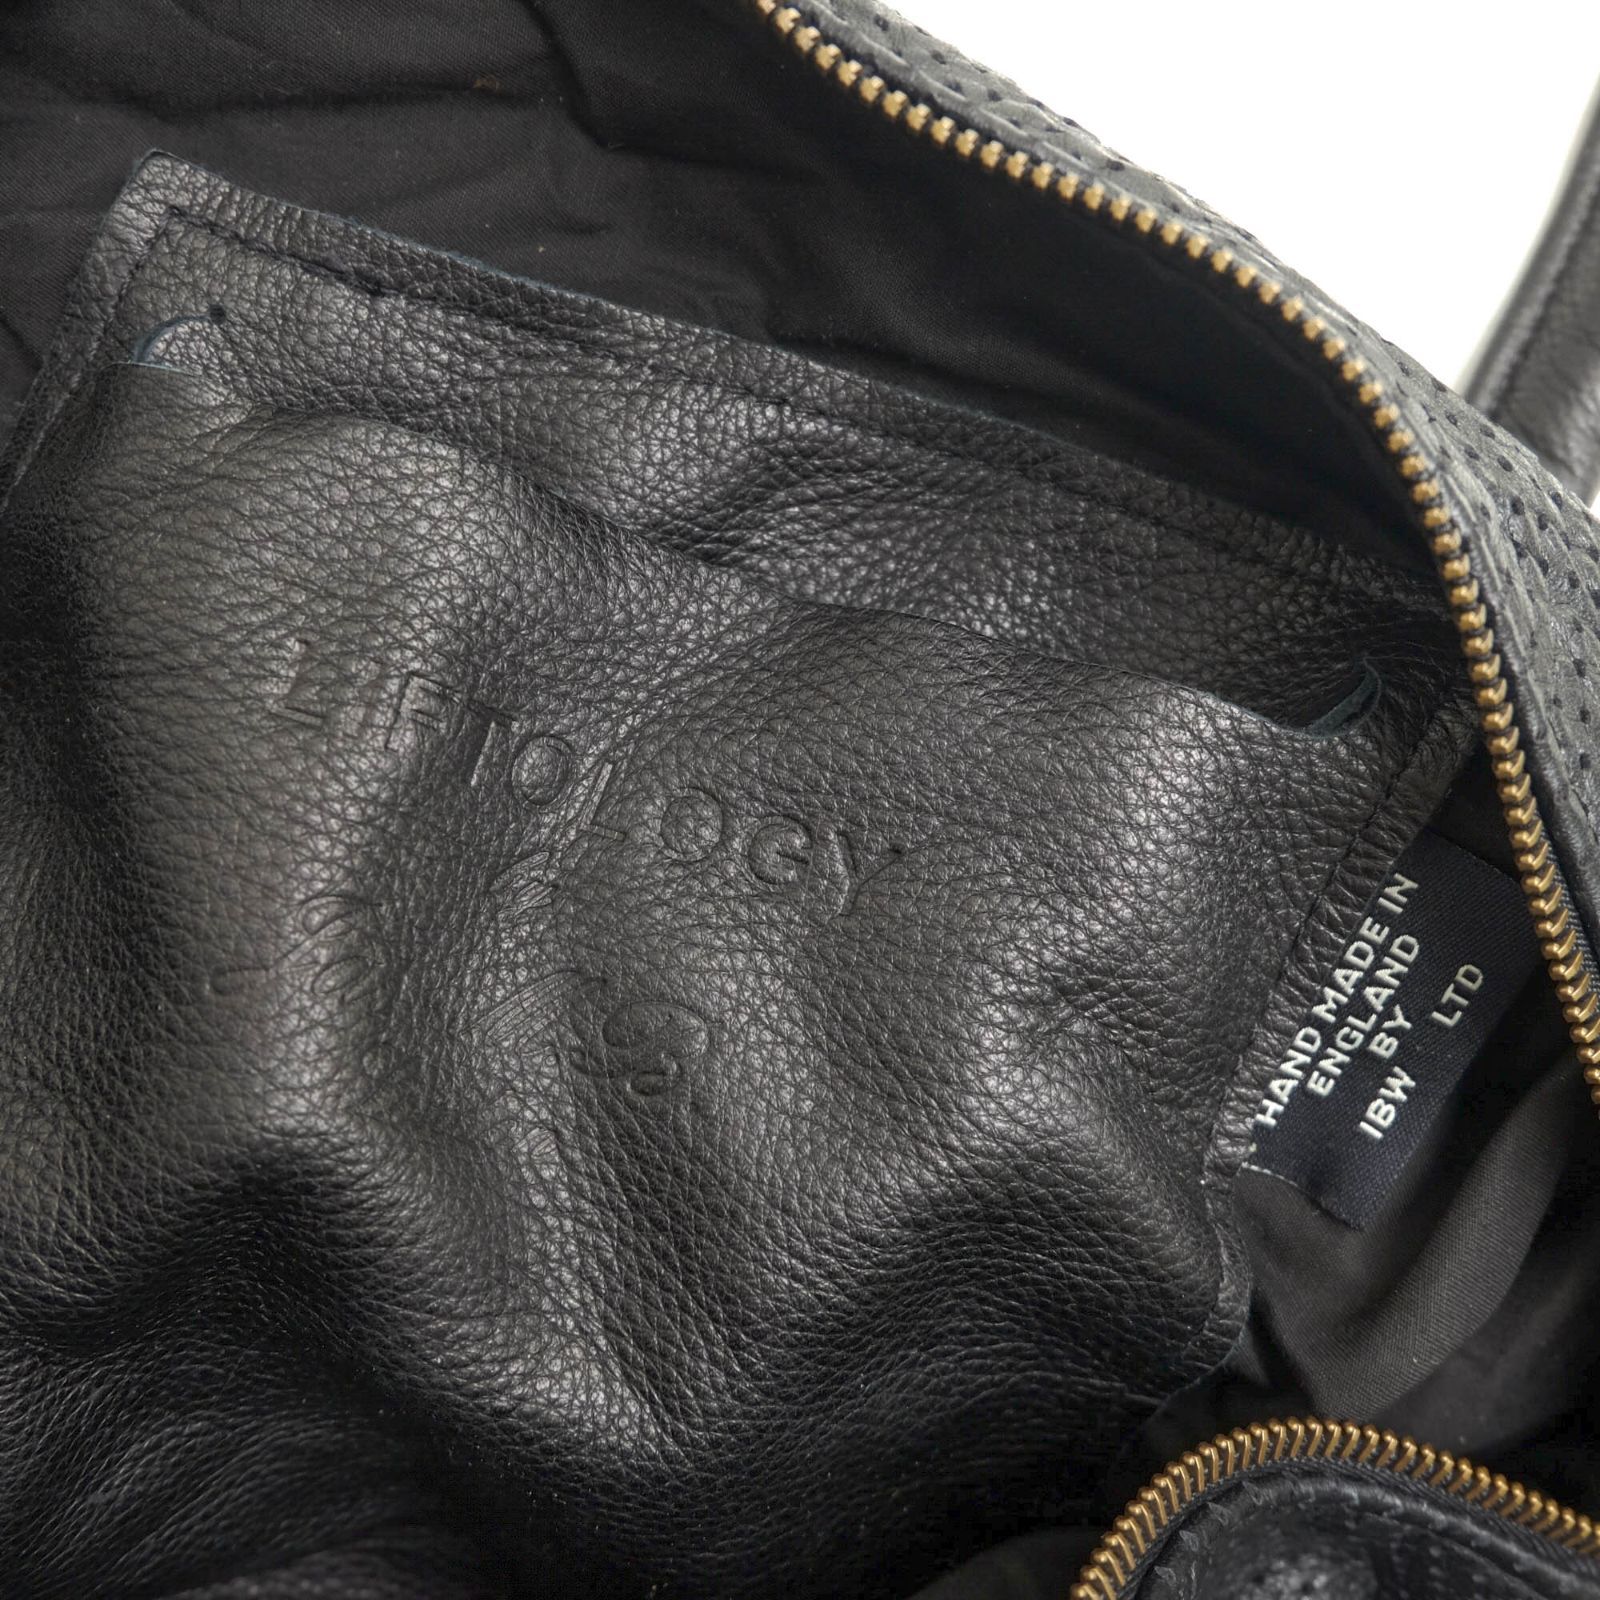 ジャスエムビー／Jas-M.B. バッグ ボストンバッグ 鞄 旅行鞄 メンズ 男性 男性用レザー 革 本革 ブラック 黒  SQUARE BARREL 2WAY ショルダーバッグ ヴィンテージ加工